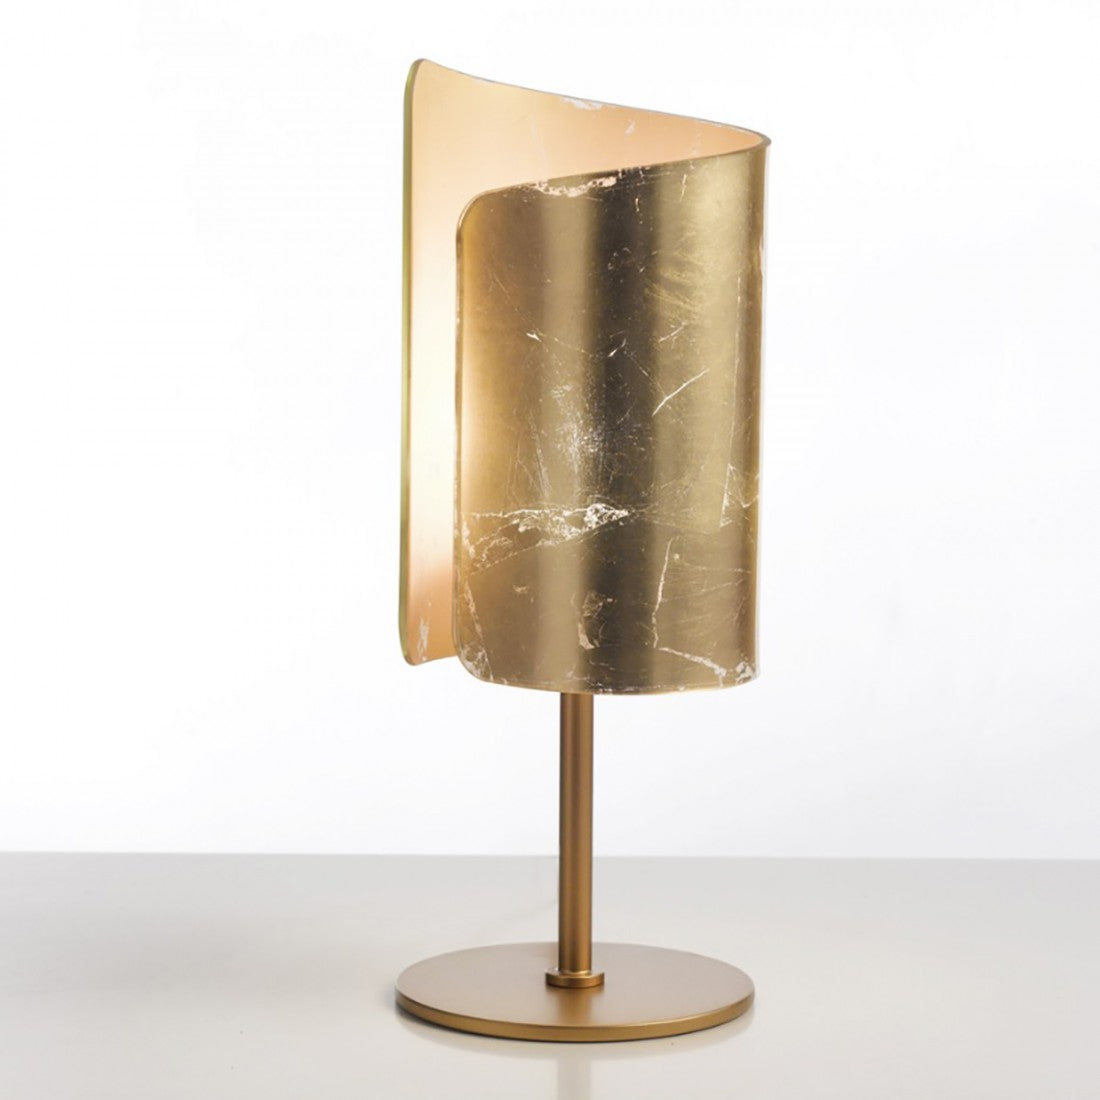 Abat-jour classica selene illuminazione papiro 0380 e27 led vetro lampada tavolo, vetro foglia oro